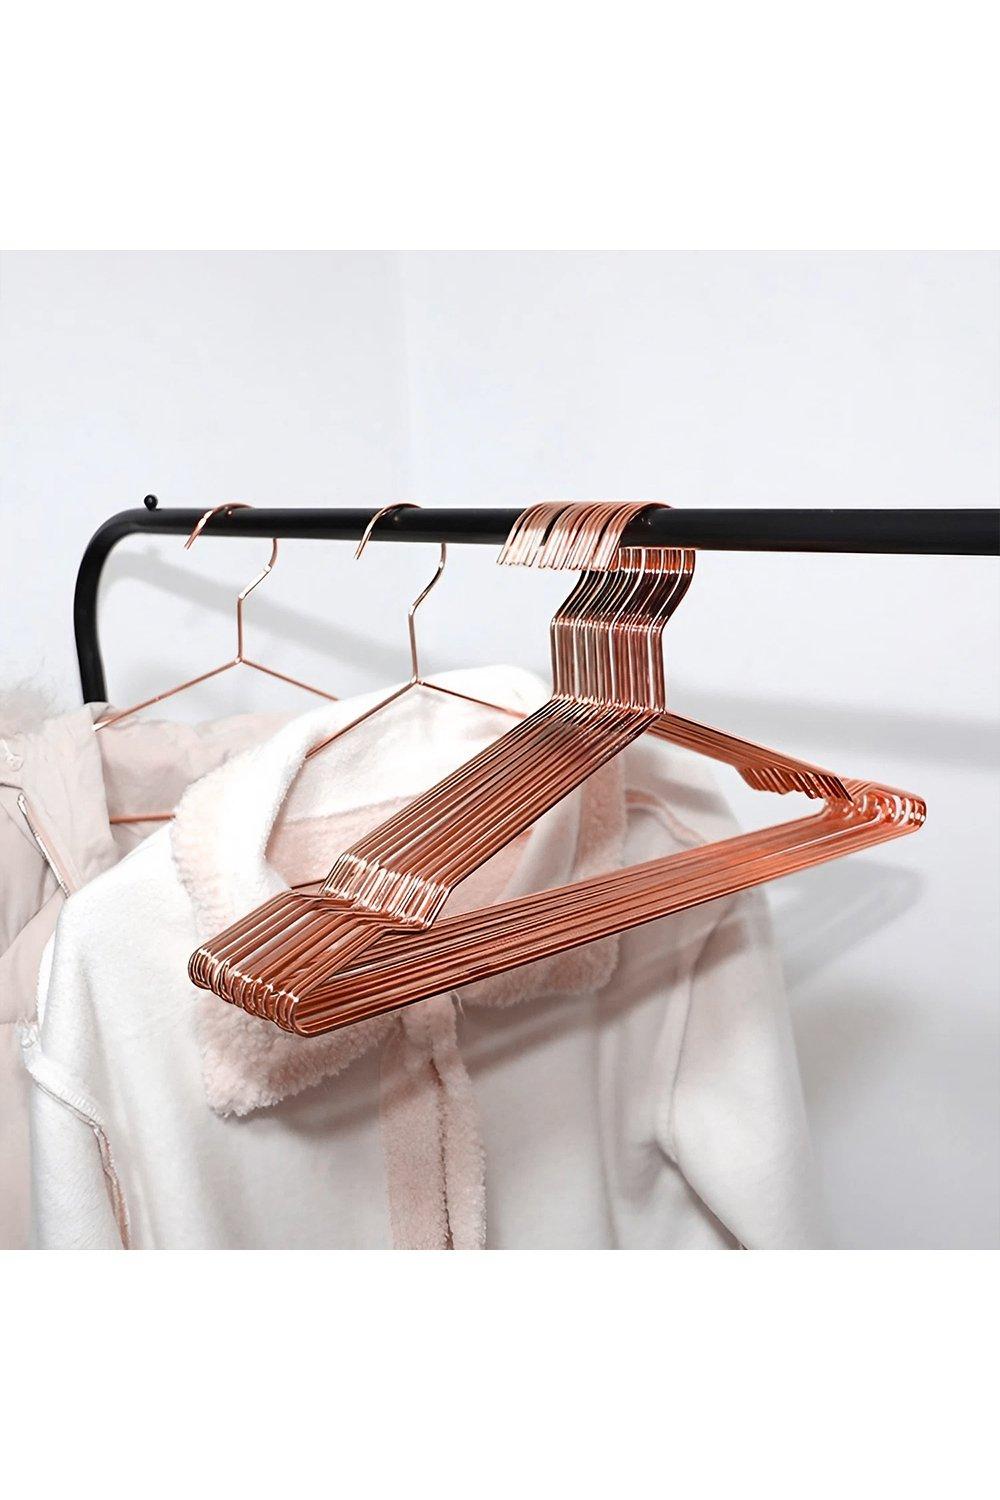 20Pcs Metal Clothes Hangers Set